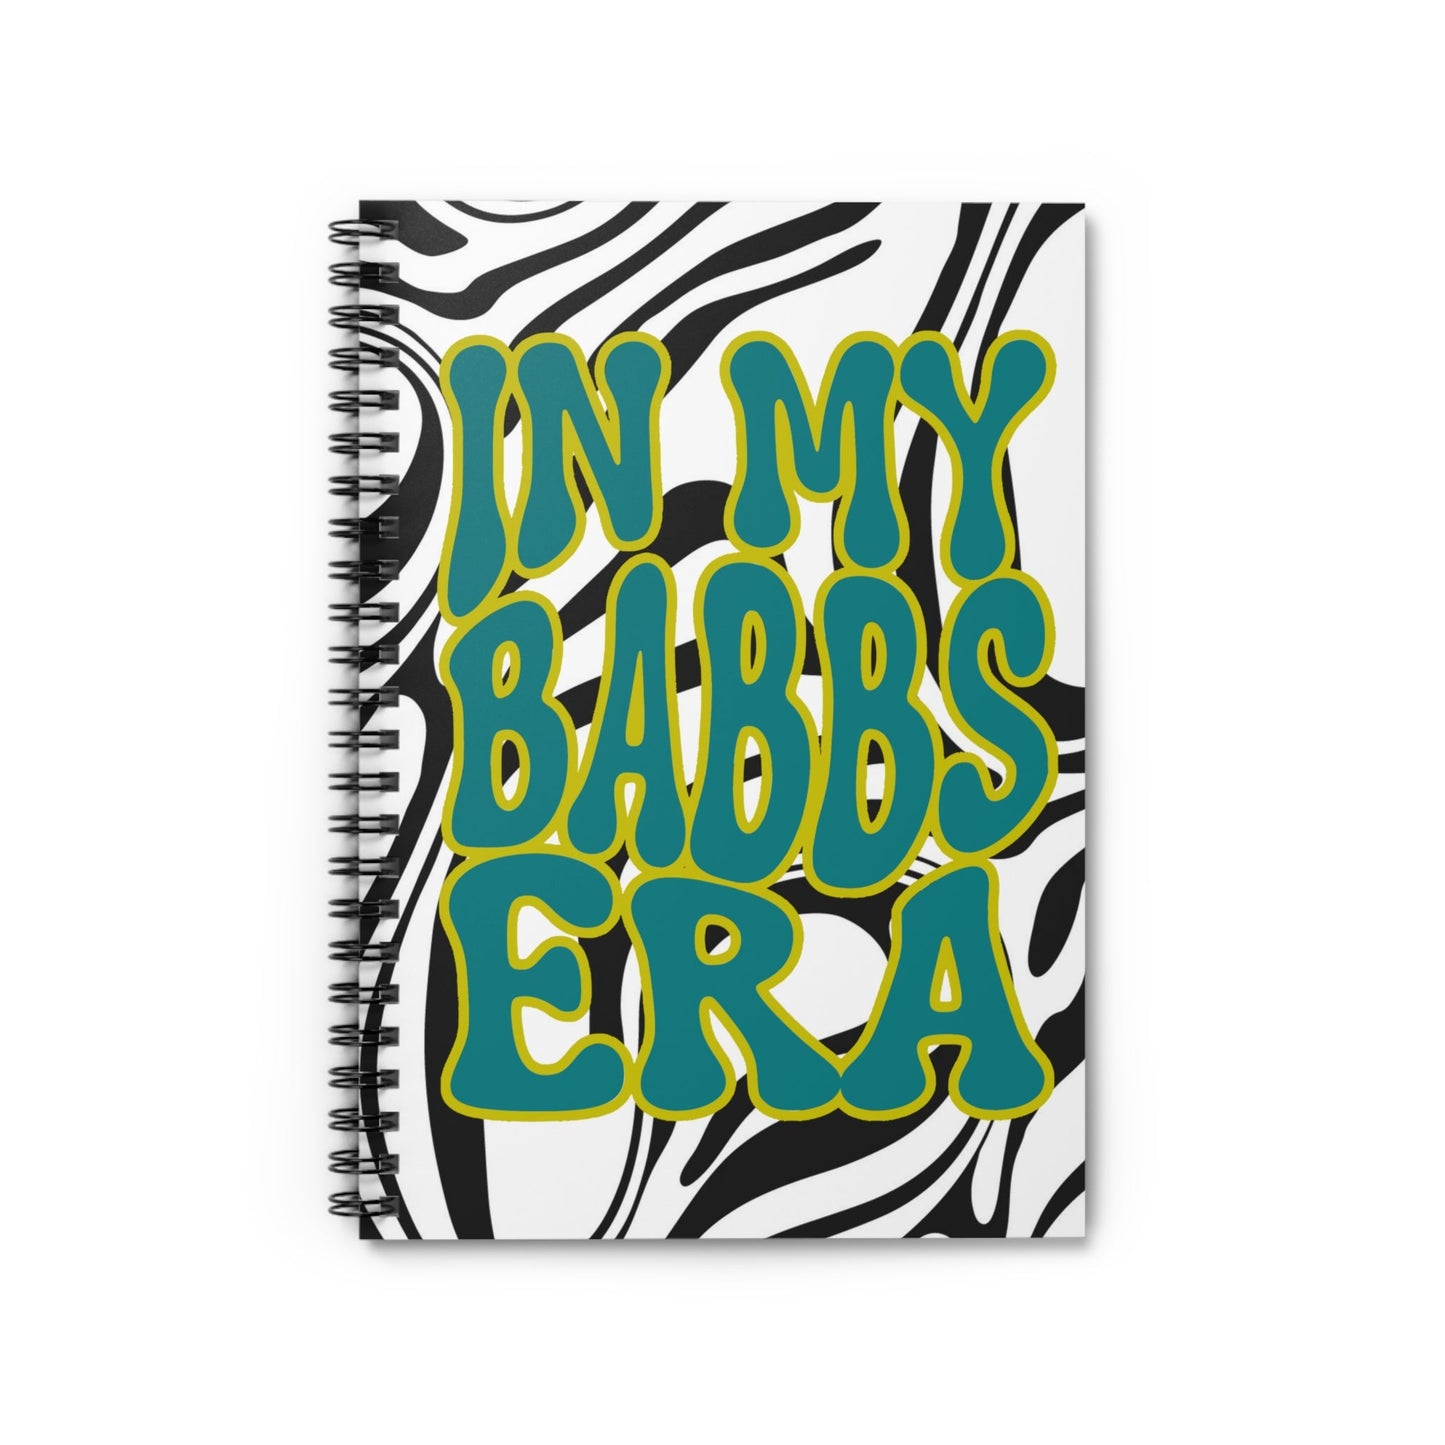 Babbs Era Spiral Notebook - Ruled Line - LOUD